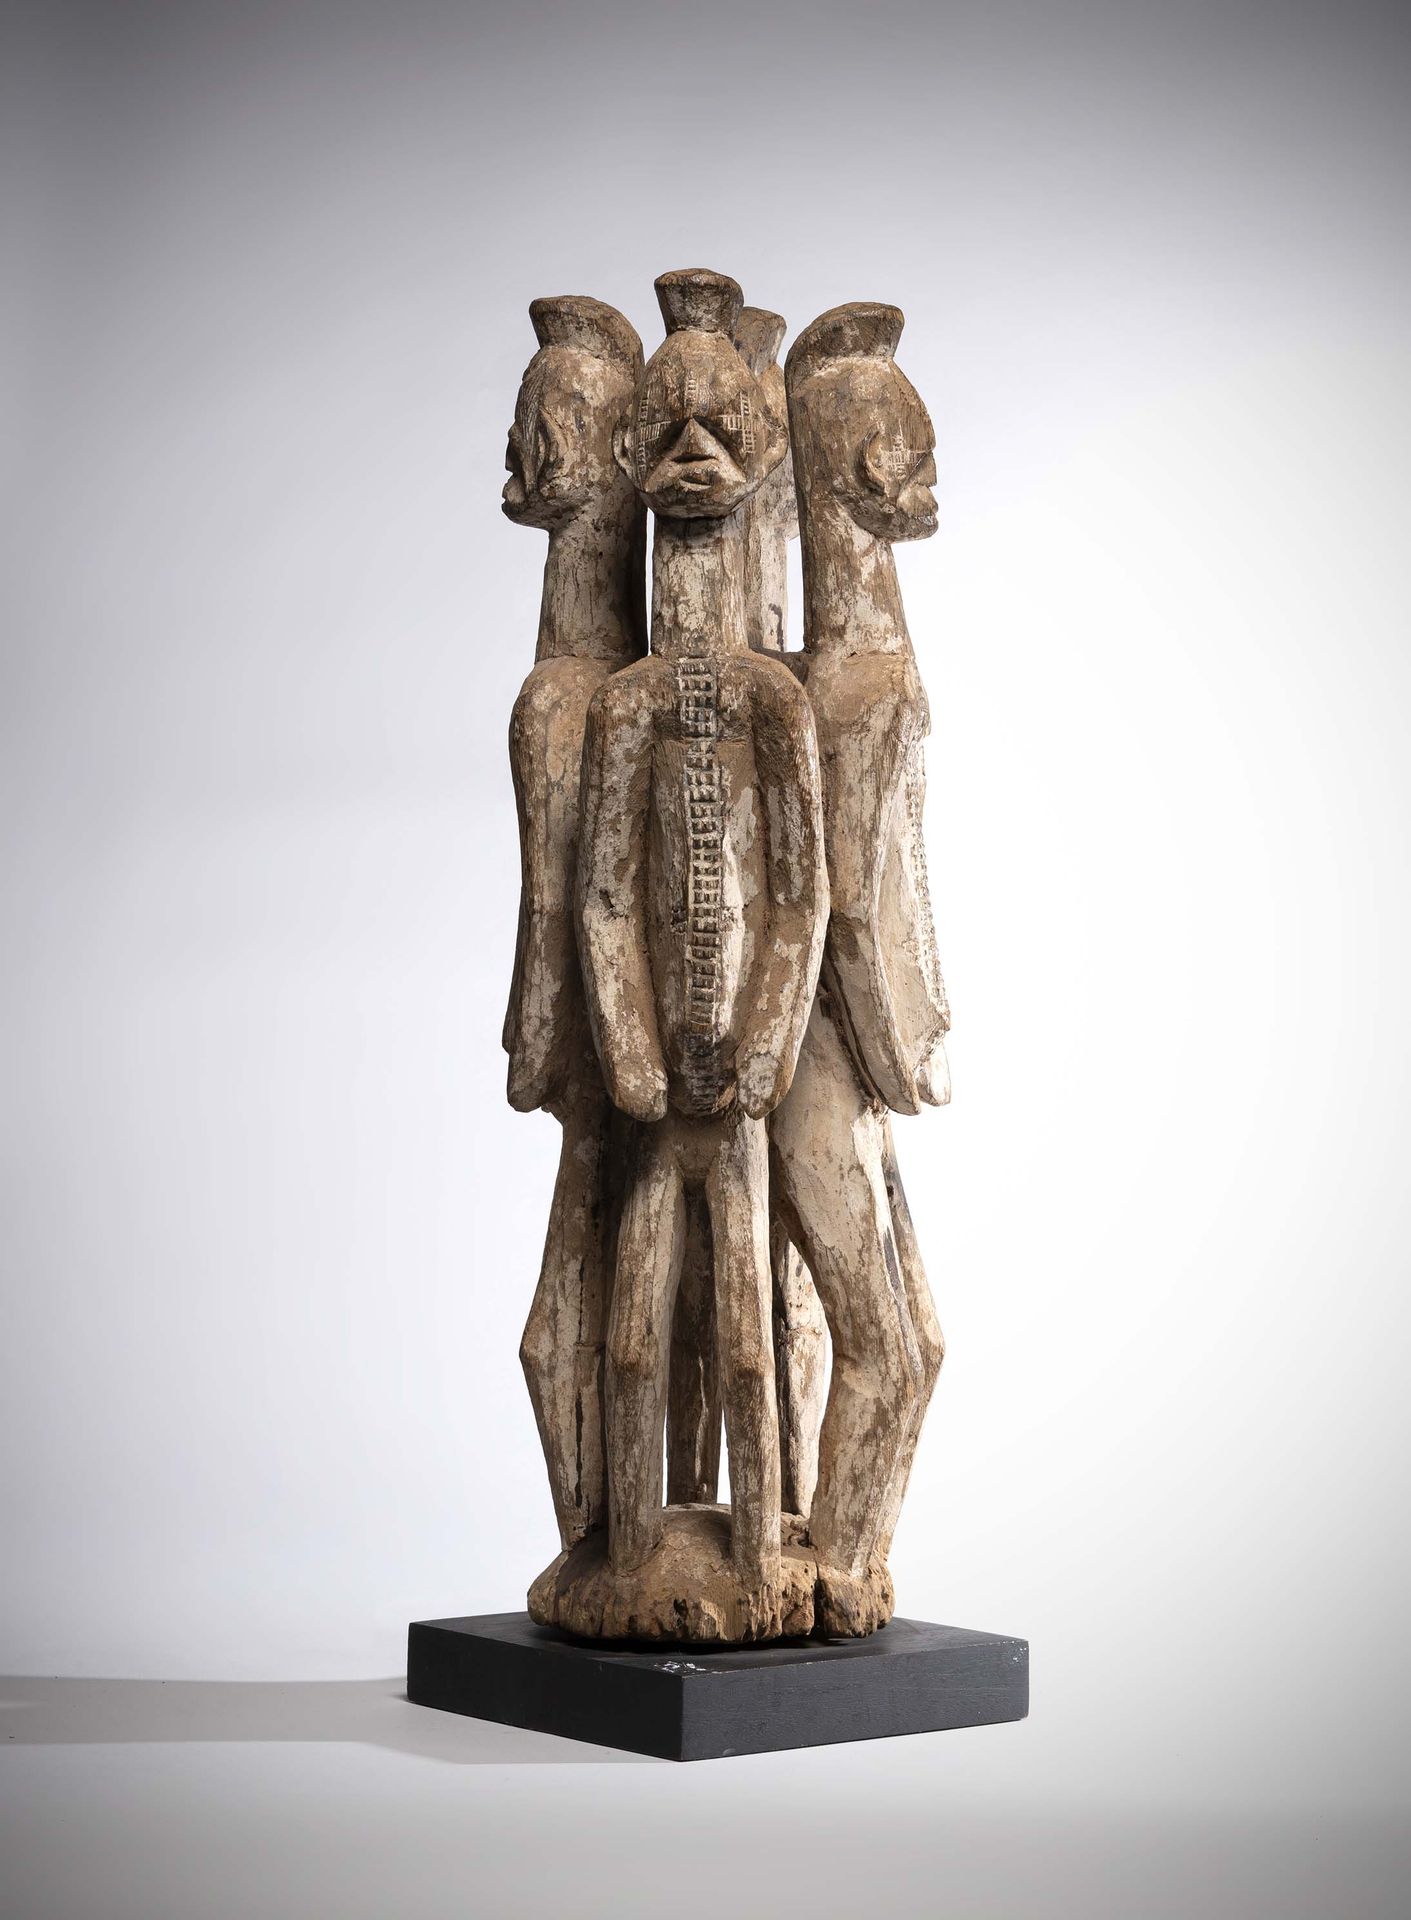 Null Ibo

(Nigeria) Importante escultura de altar formada por cuatro estatuas ma&hellip;